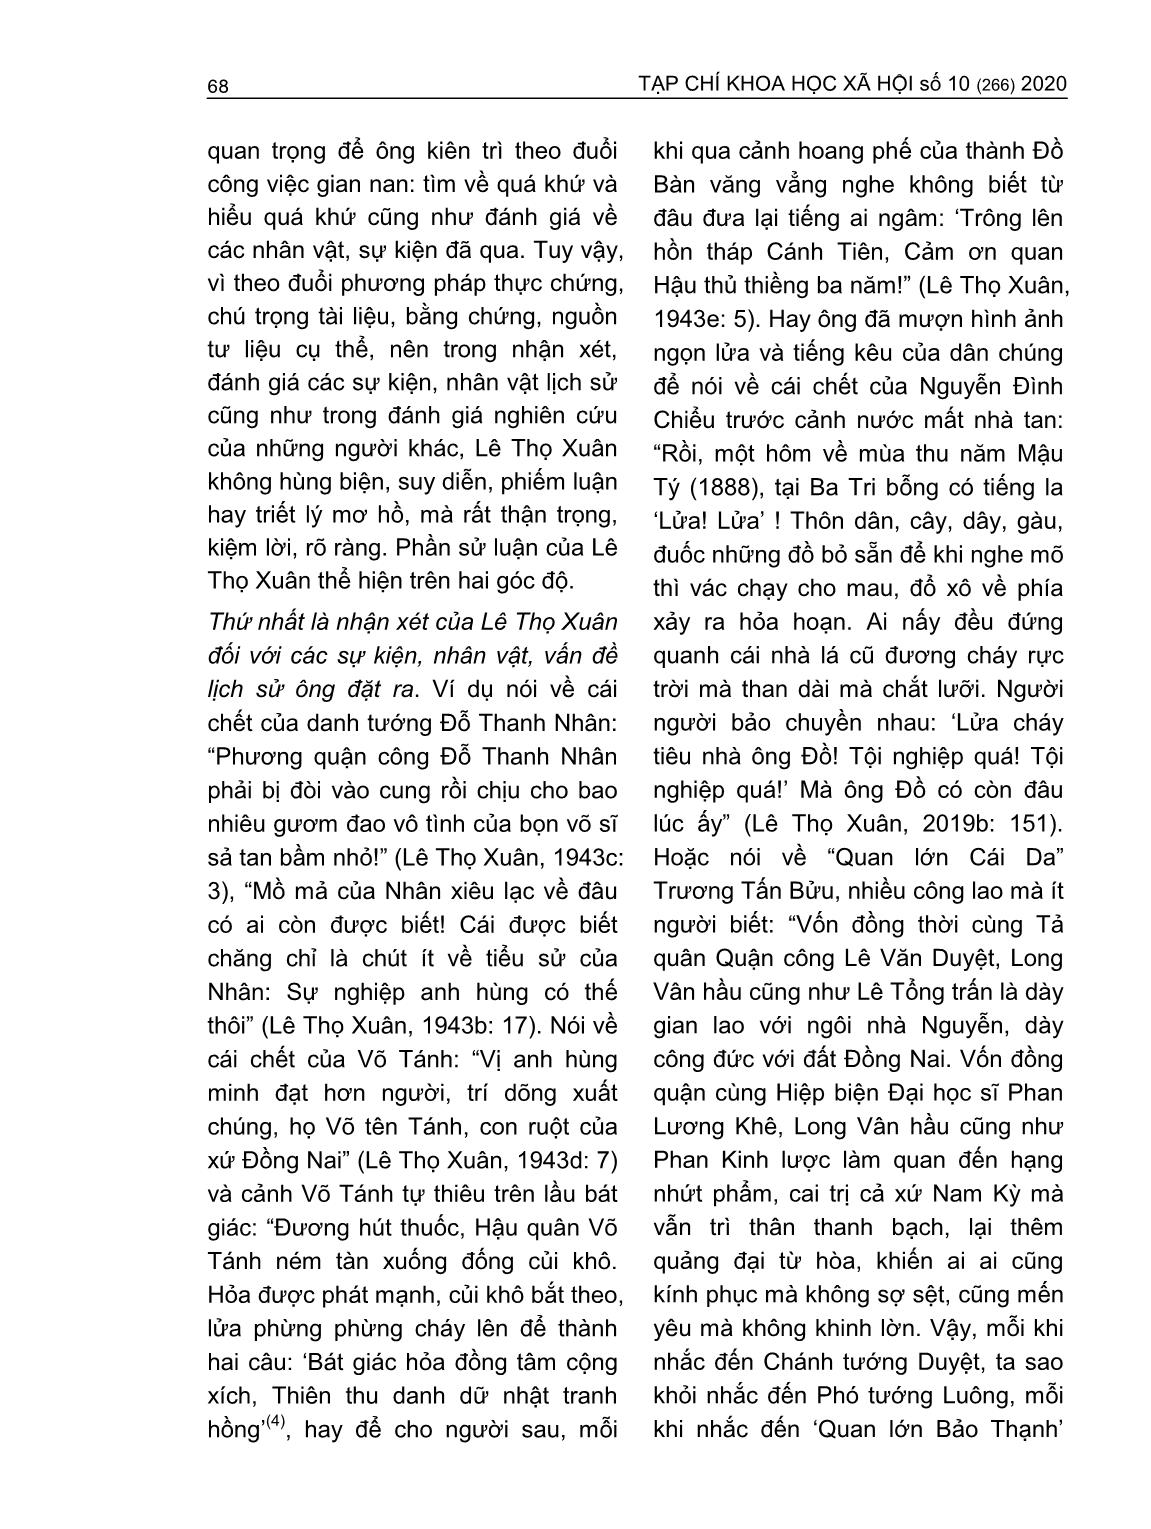 Đóng góp của Lê Thọ Xuân trong nghiên cứu lịch sử Nam Bộ triều Nguyễn thế kỷ XIX trang 9